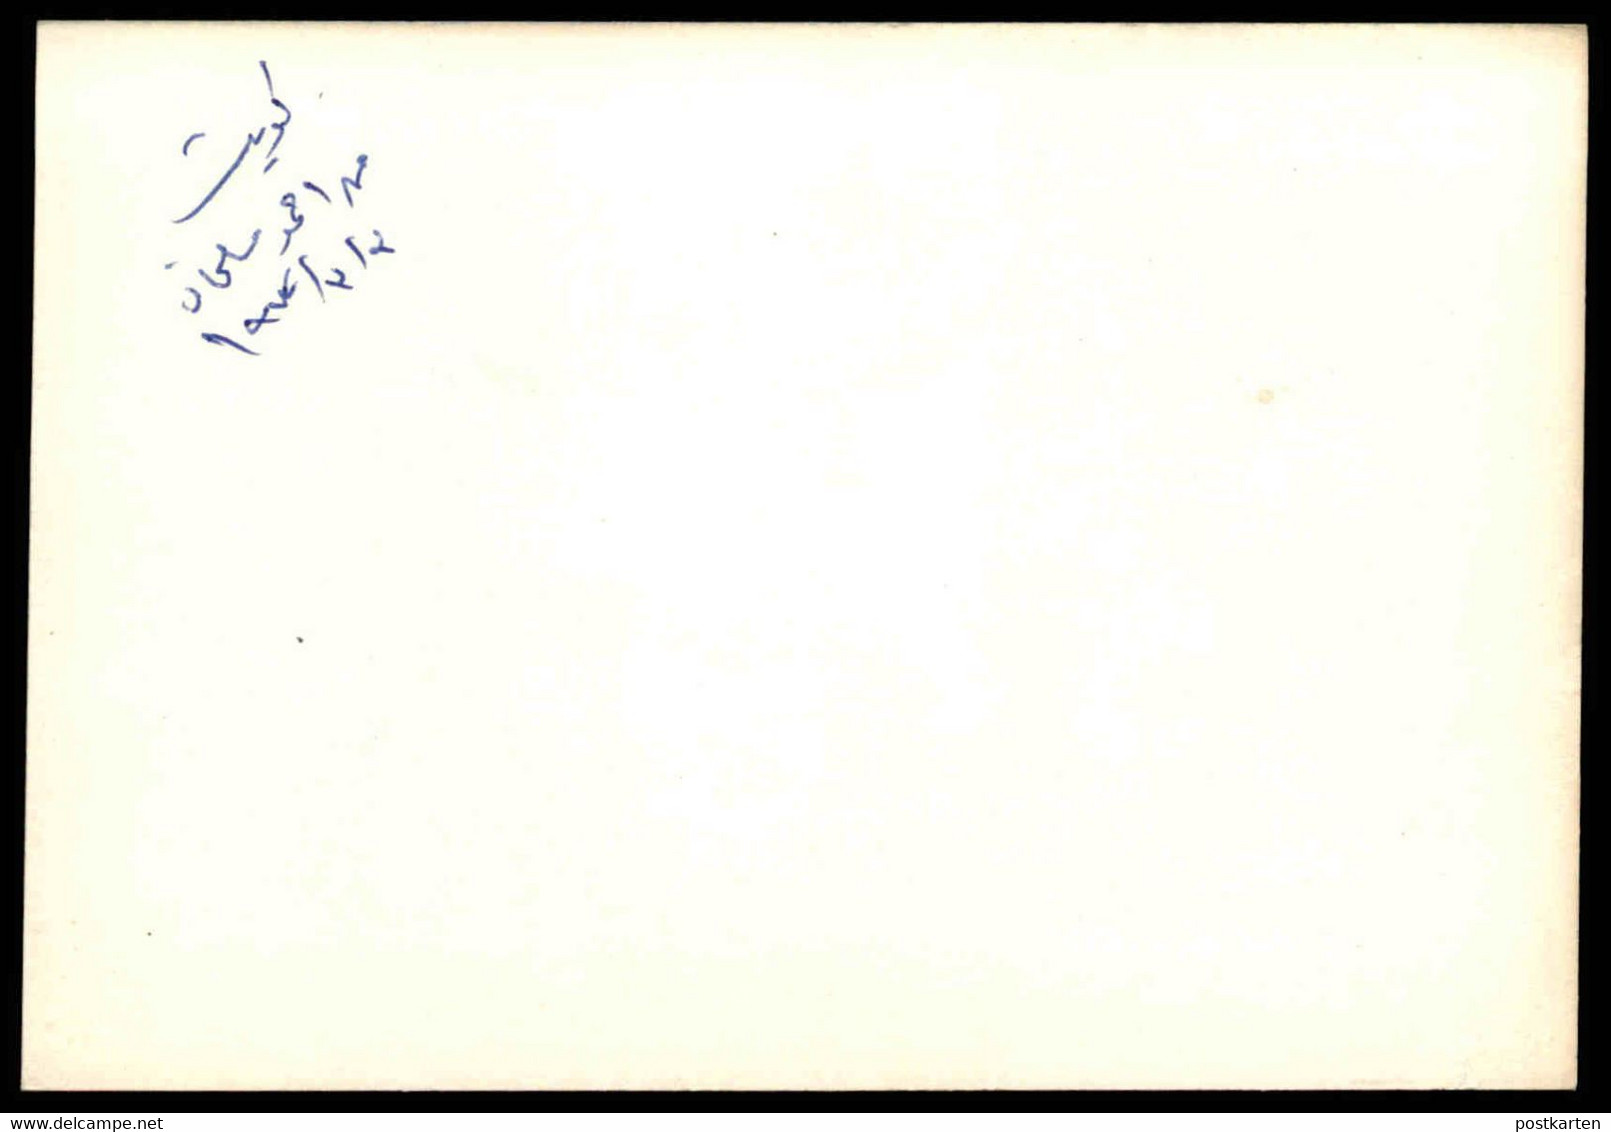 ÄLTERE KARTE KUWAIT WOHNVIERTEL 03.03.1972 AUTOS HÄUSER HAUS AHMED SALMAN Ansichtskarte Postcard Cpa AK - Koweït